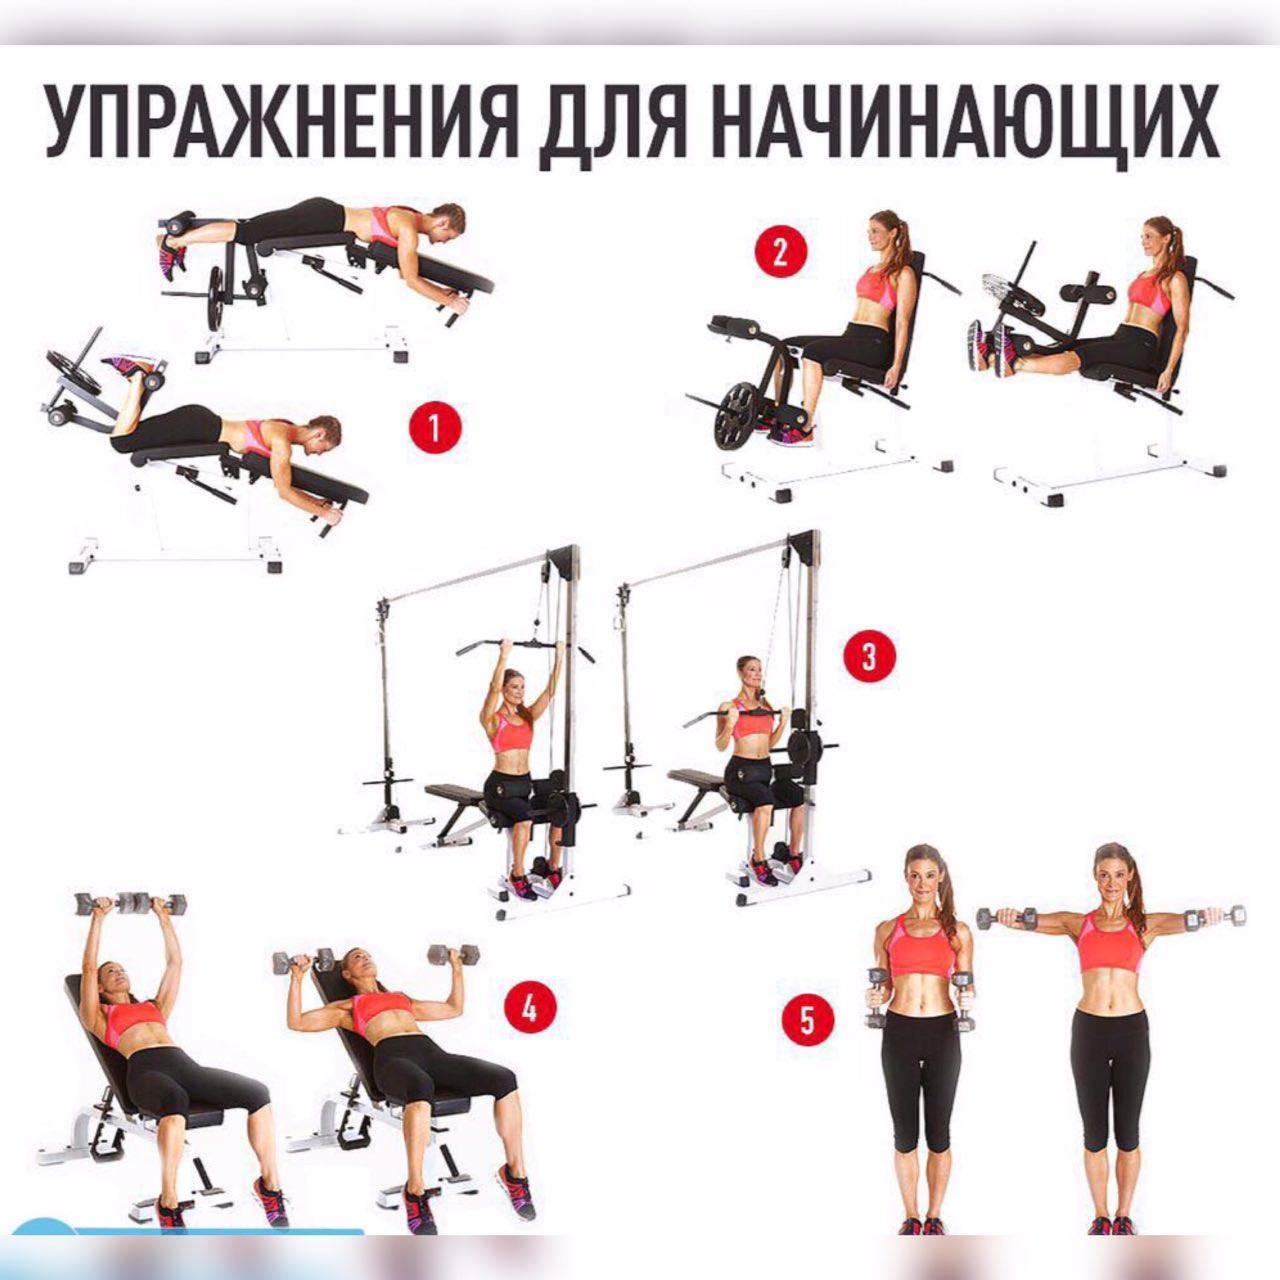 Тренировка в тренажерном зале круговая: что это такое, пример эффективной программы на все группы мышц в спортзале на тренажерах